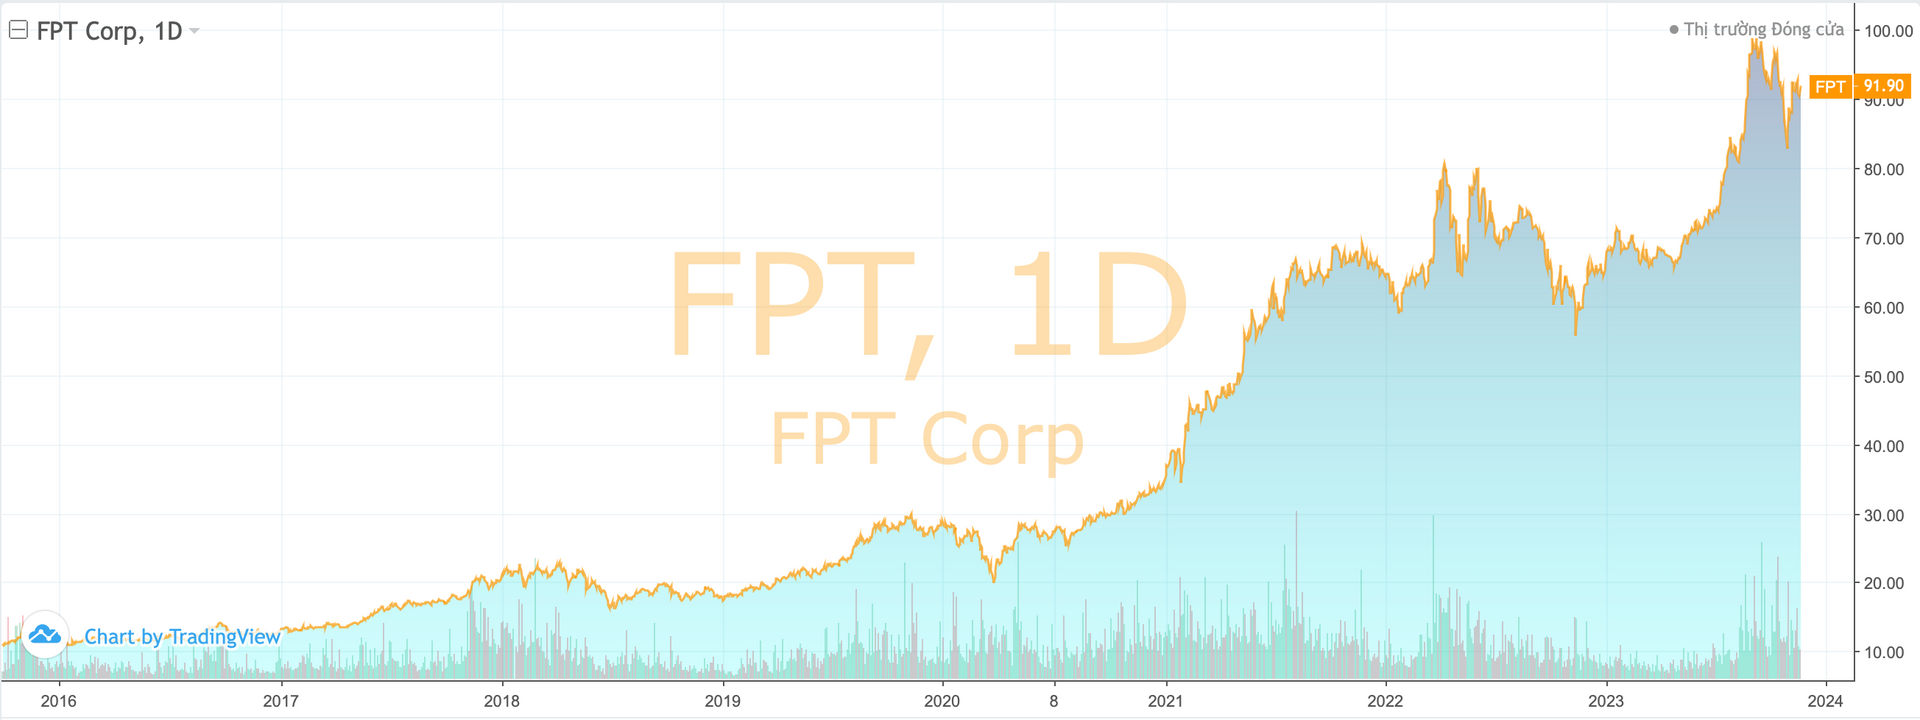 FPT trở lại top 10 doanh nghiệp niêm yết giá trị nhất thị trường chứng khoán sau nhiều năm - Ảnh 2.